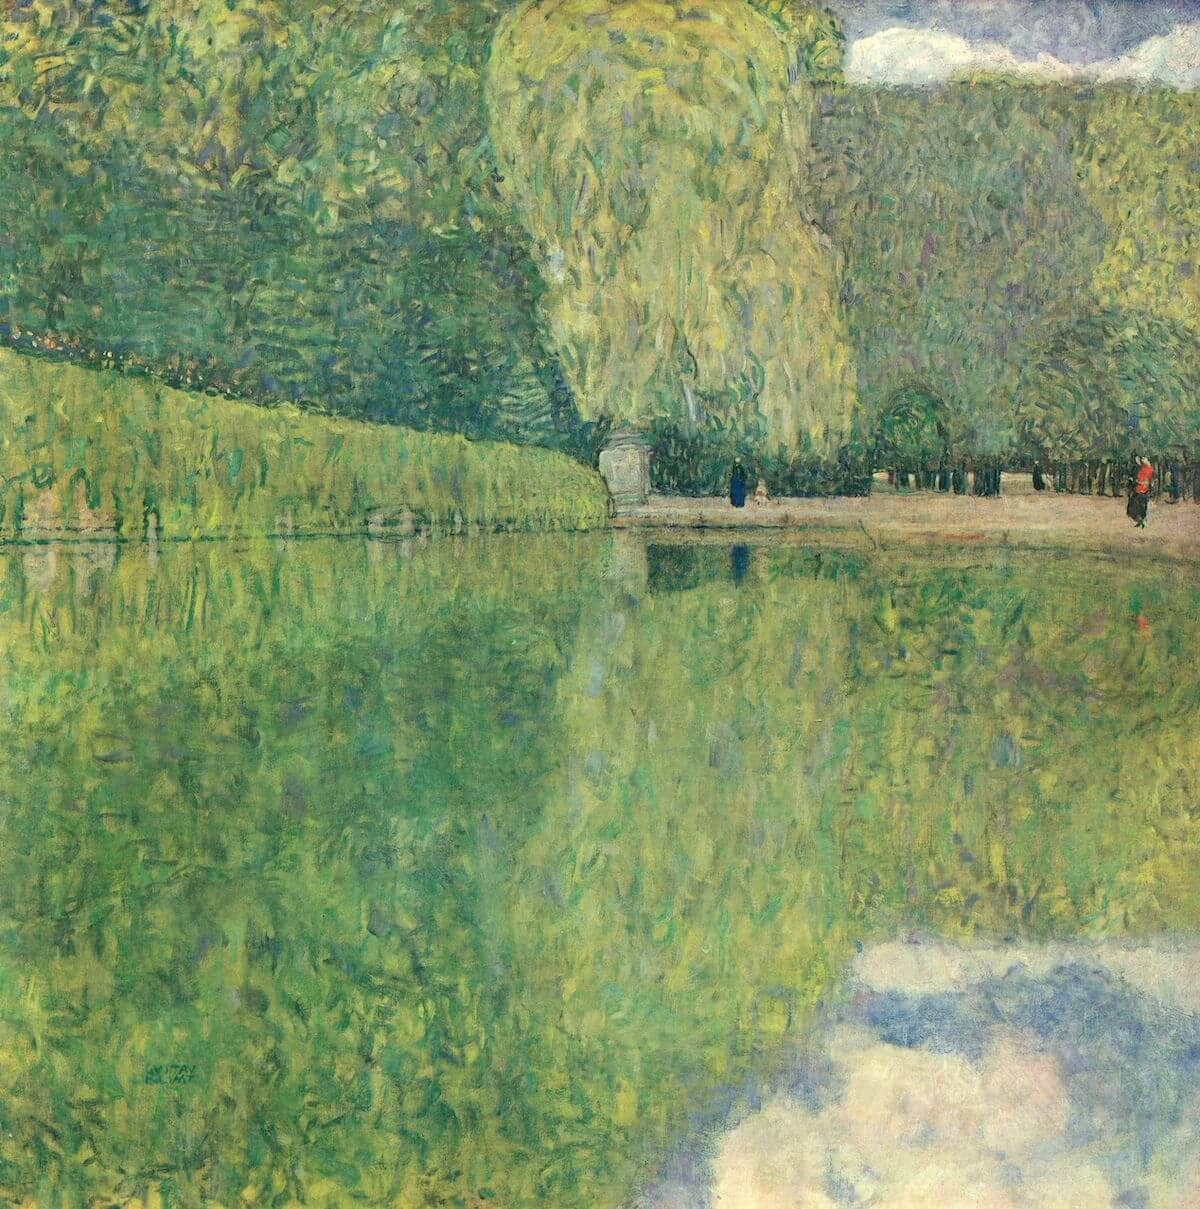 Park of Schönbrunn, 1916 by Gustav Klimt